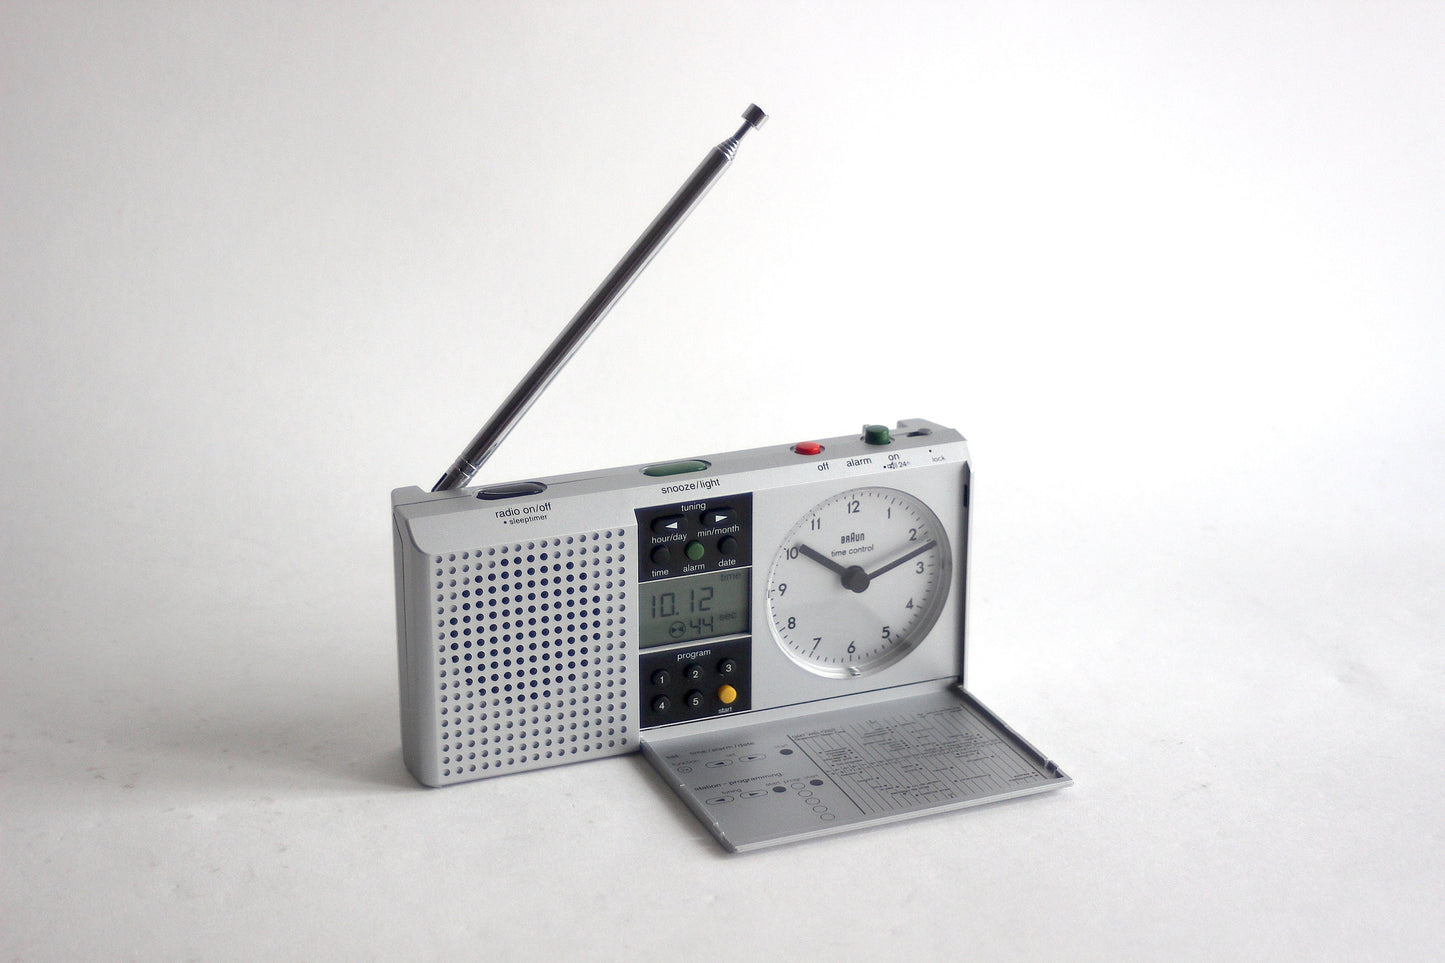 BRAUN Radio Alarm Clock ABR 314 df digital radio time control. Dietrich Lubs 1999.